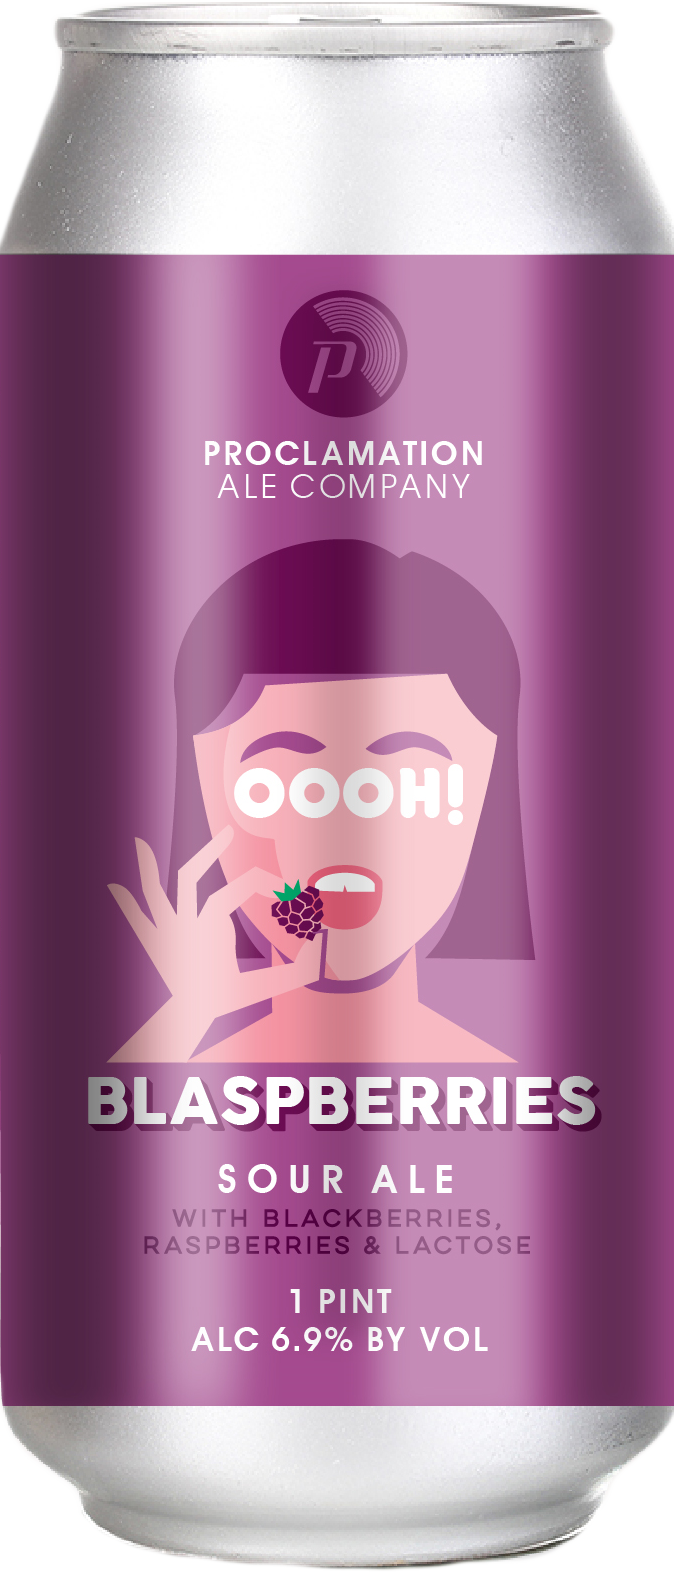 Produktbild von Proclamation Oooh! Blaspberries